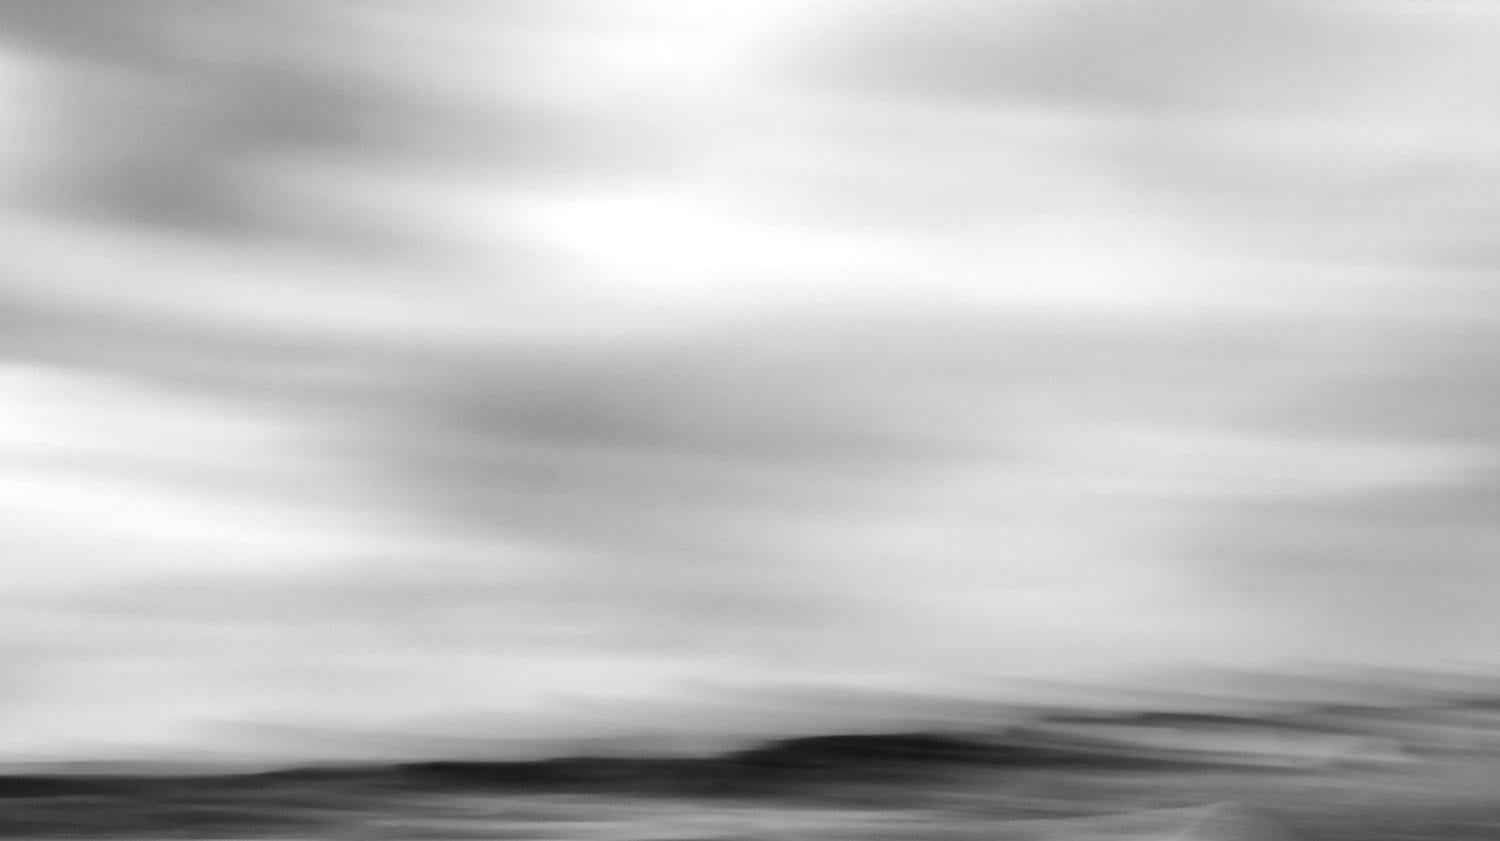 Michael Götze Landscape Photograph - Storm - contemporary black & white landscape photograph with ocean and clouds